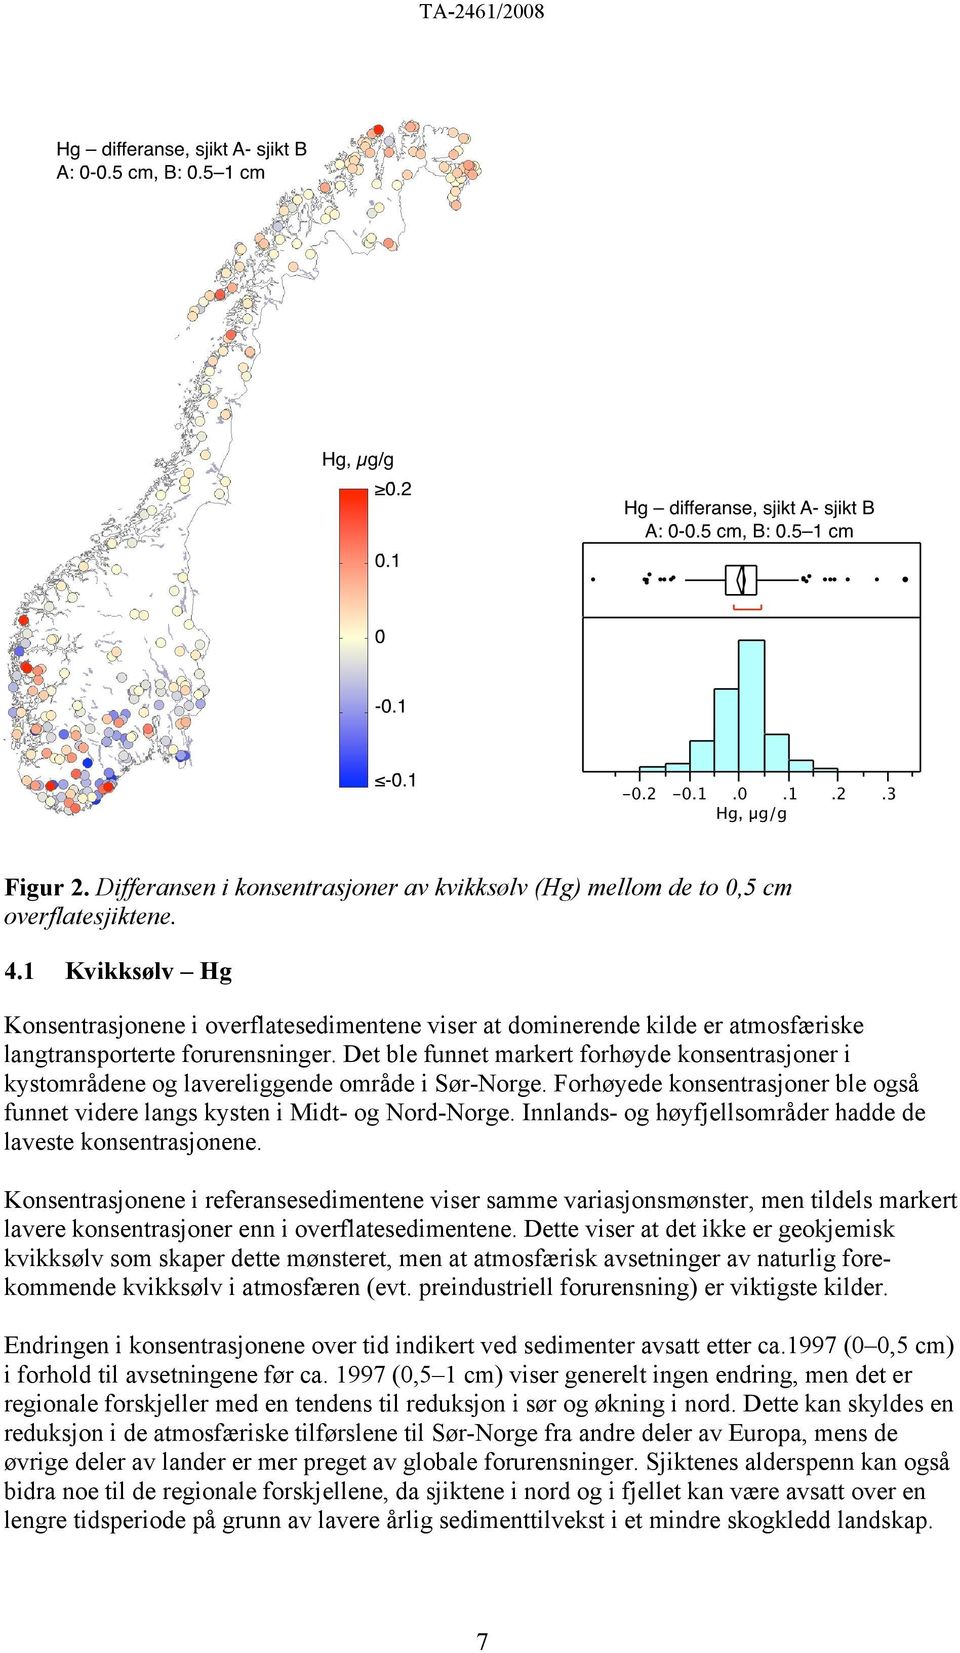 Det ble funnet markert forhøyde konsentrasjoner i kystområdene og lavereliggende område i Sør-Norge. Forhøyede konsentrasjoner ble også funnet videre langs kysten i Midt- og Nord-Norge.